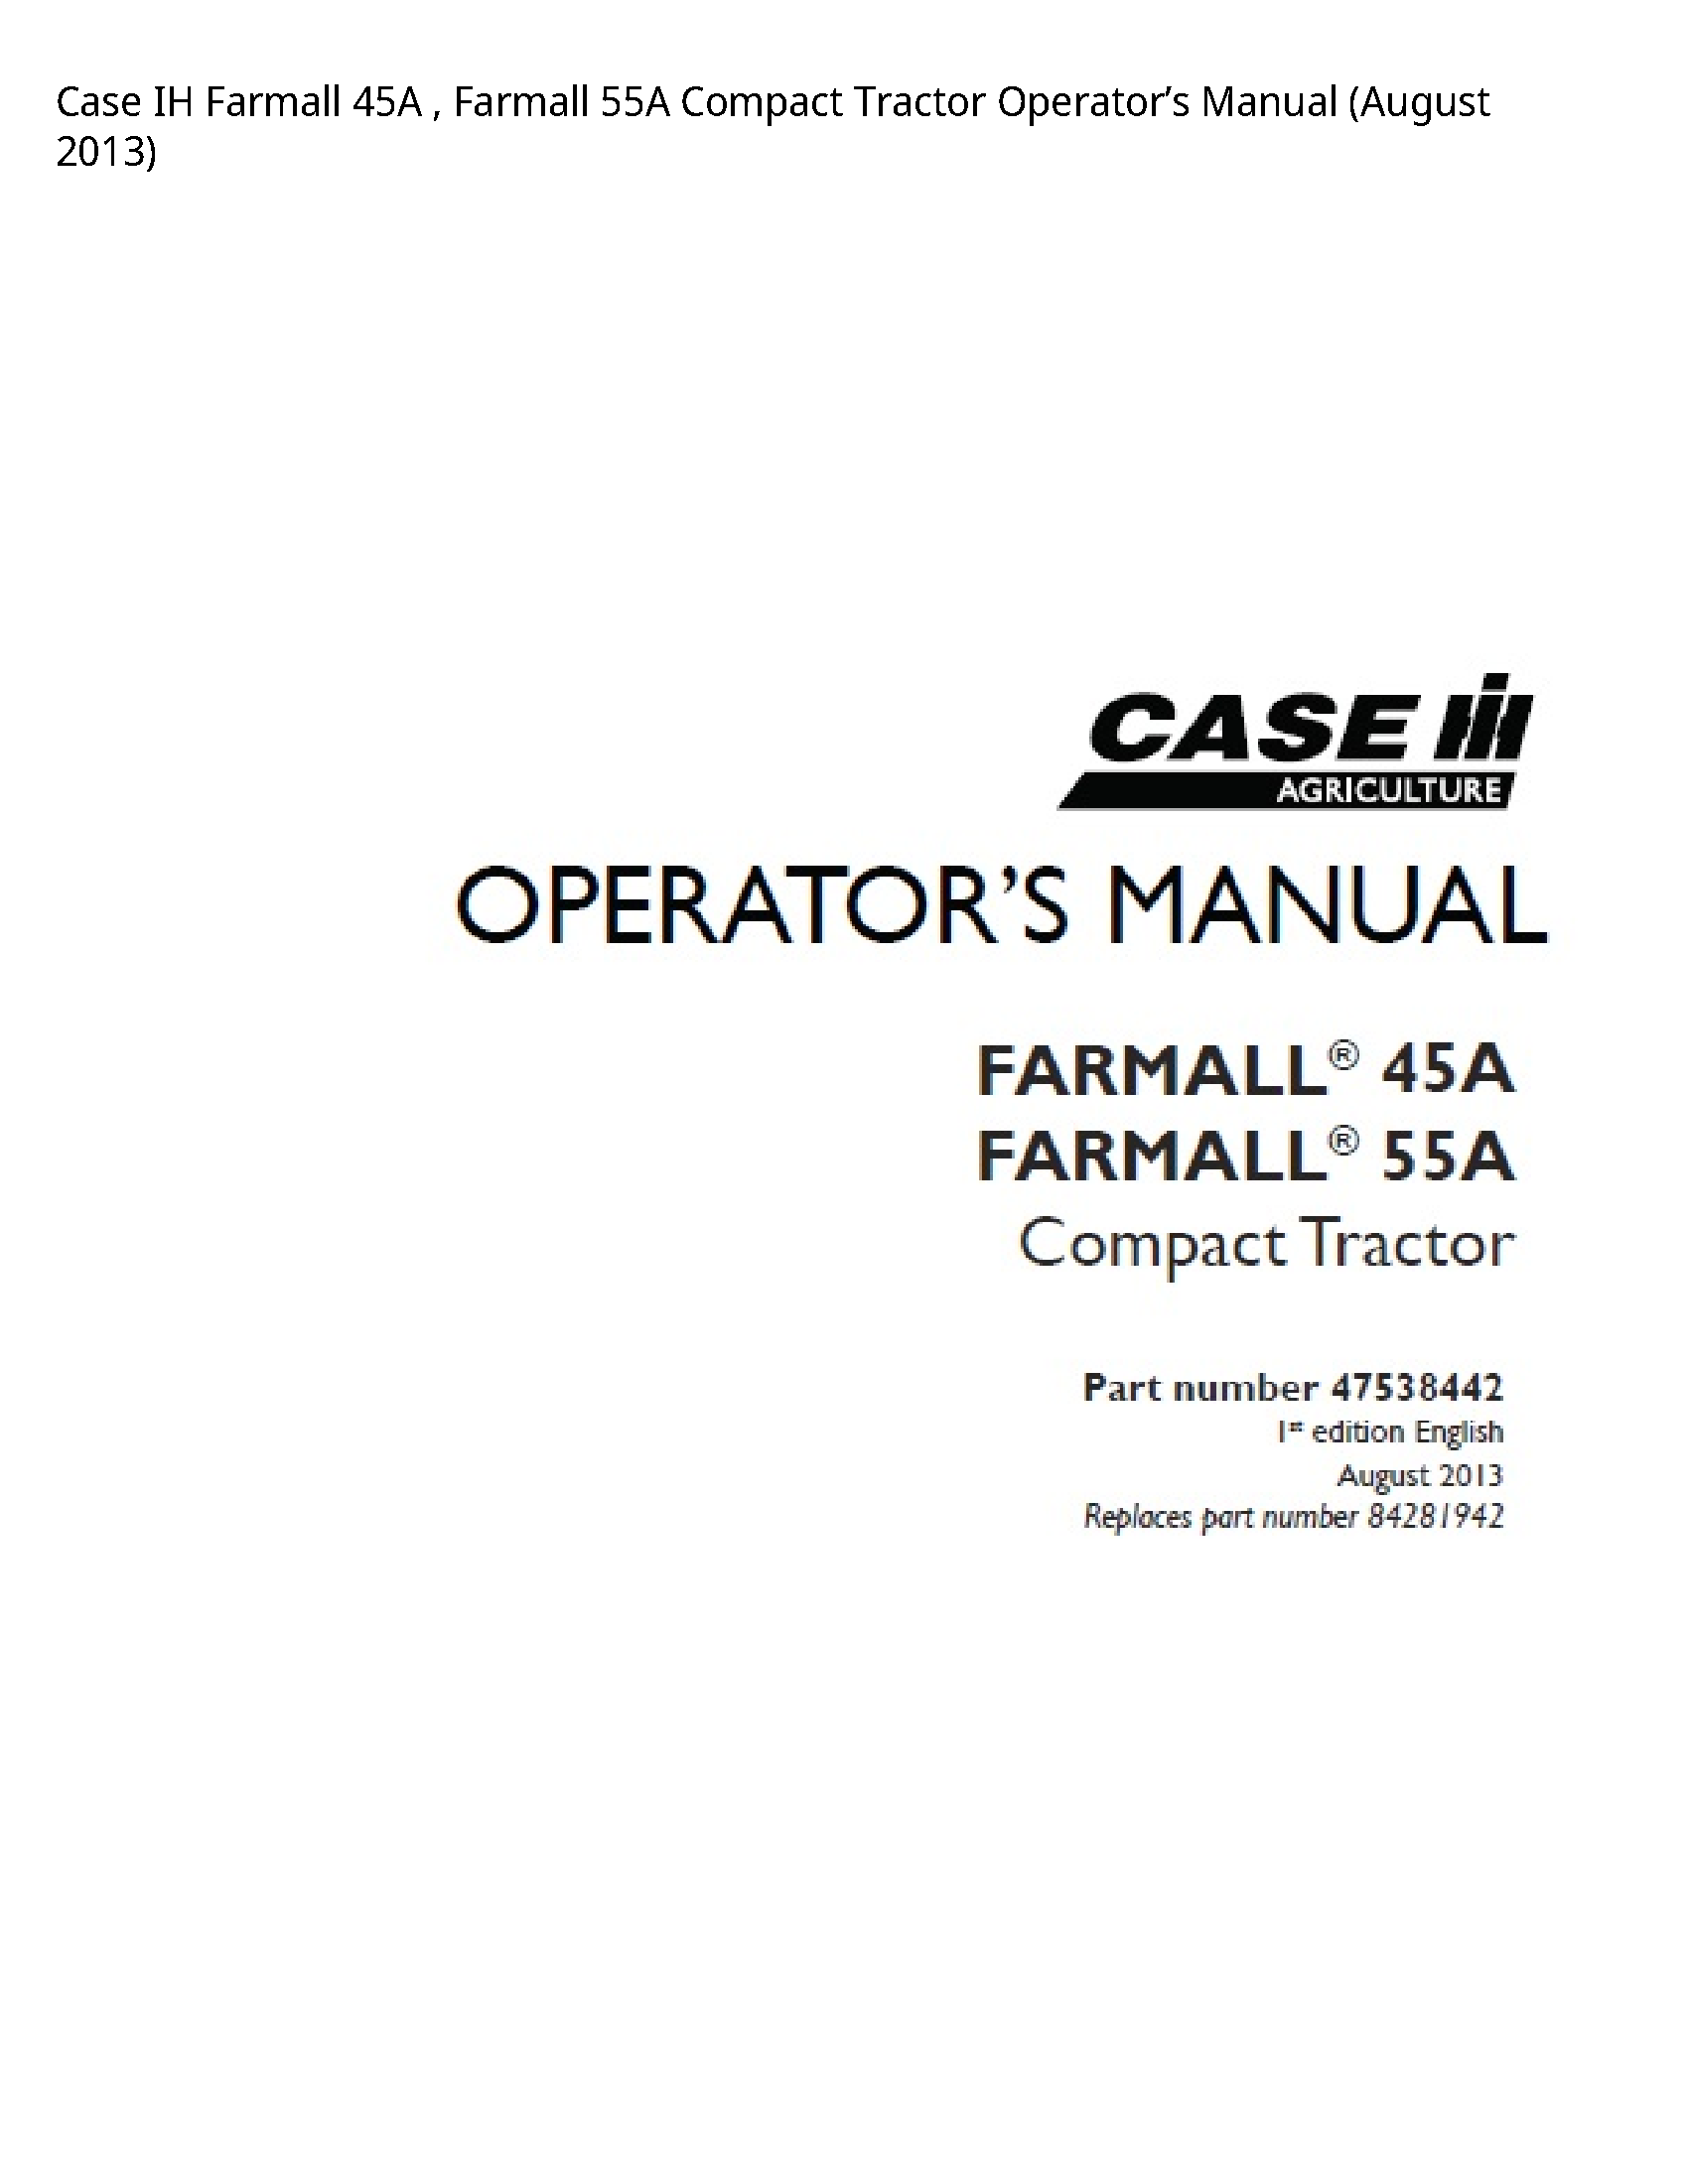 Case/Case IH 45A IH Farmall Farmall Compact Tractor Operator’s manual